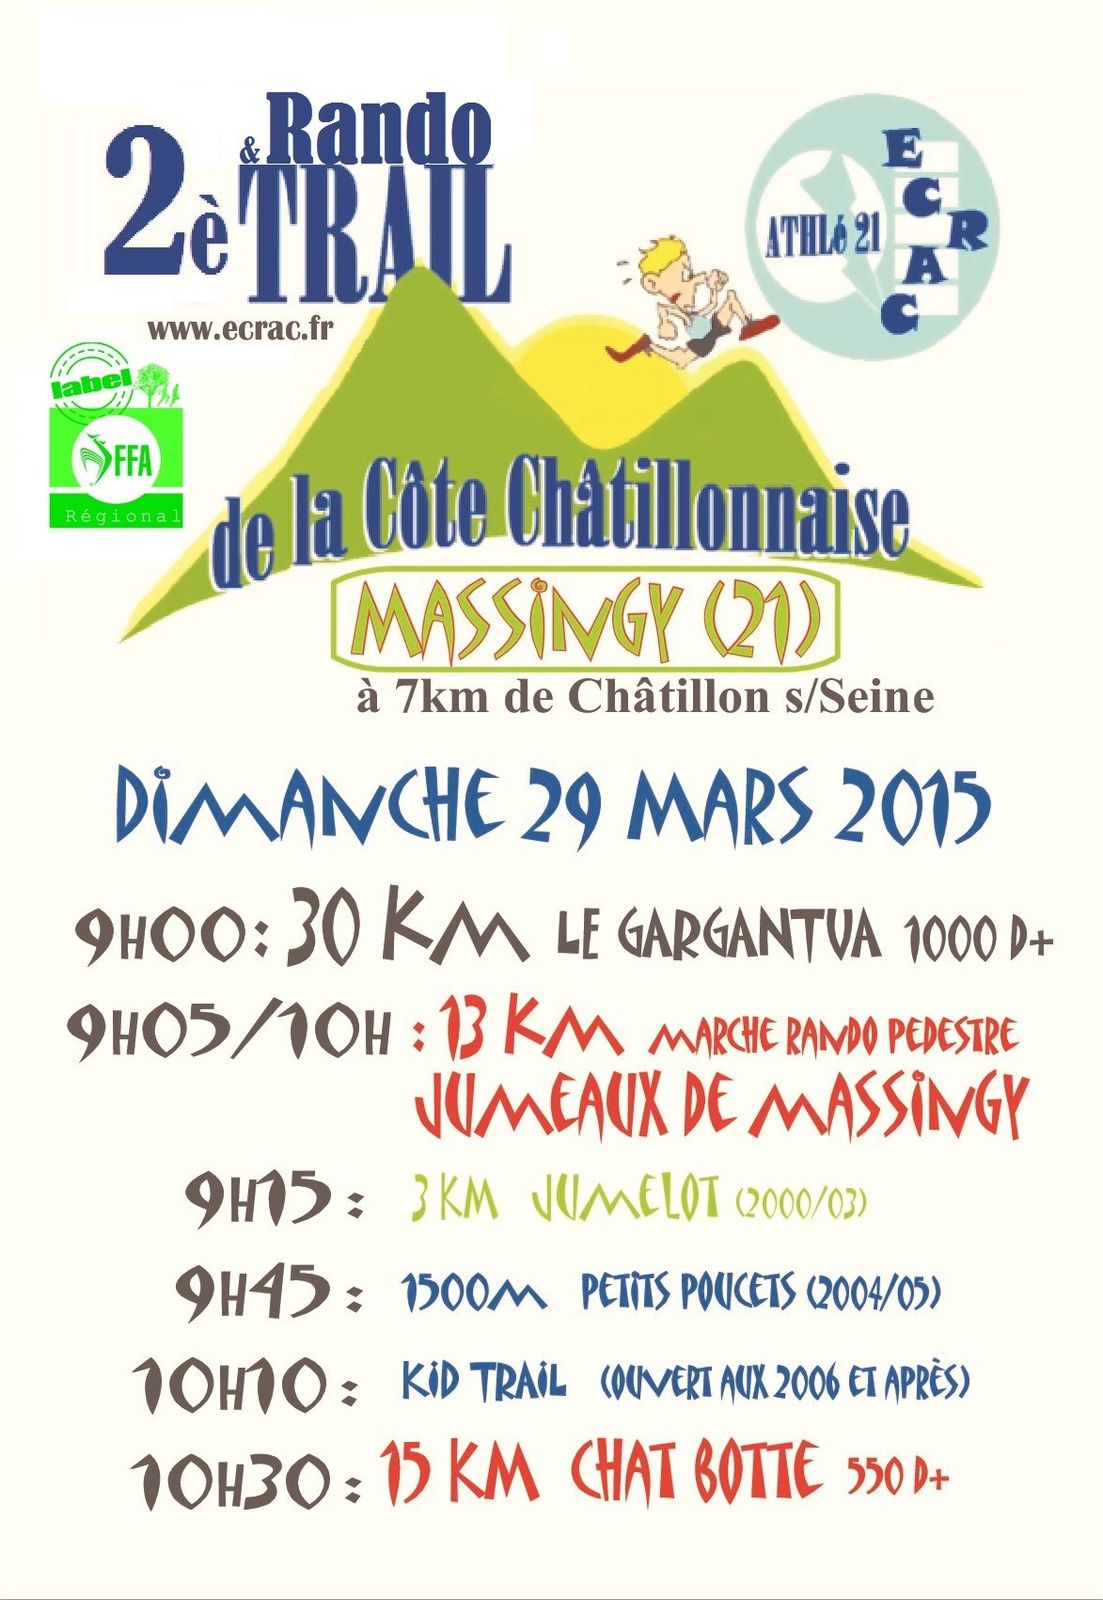 Dimanche 29 mars 2015 - Trail de la Côte Chatillonnaise - Massingy